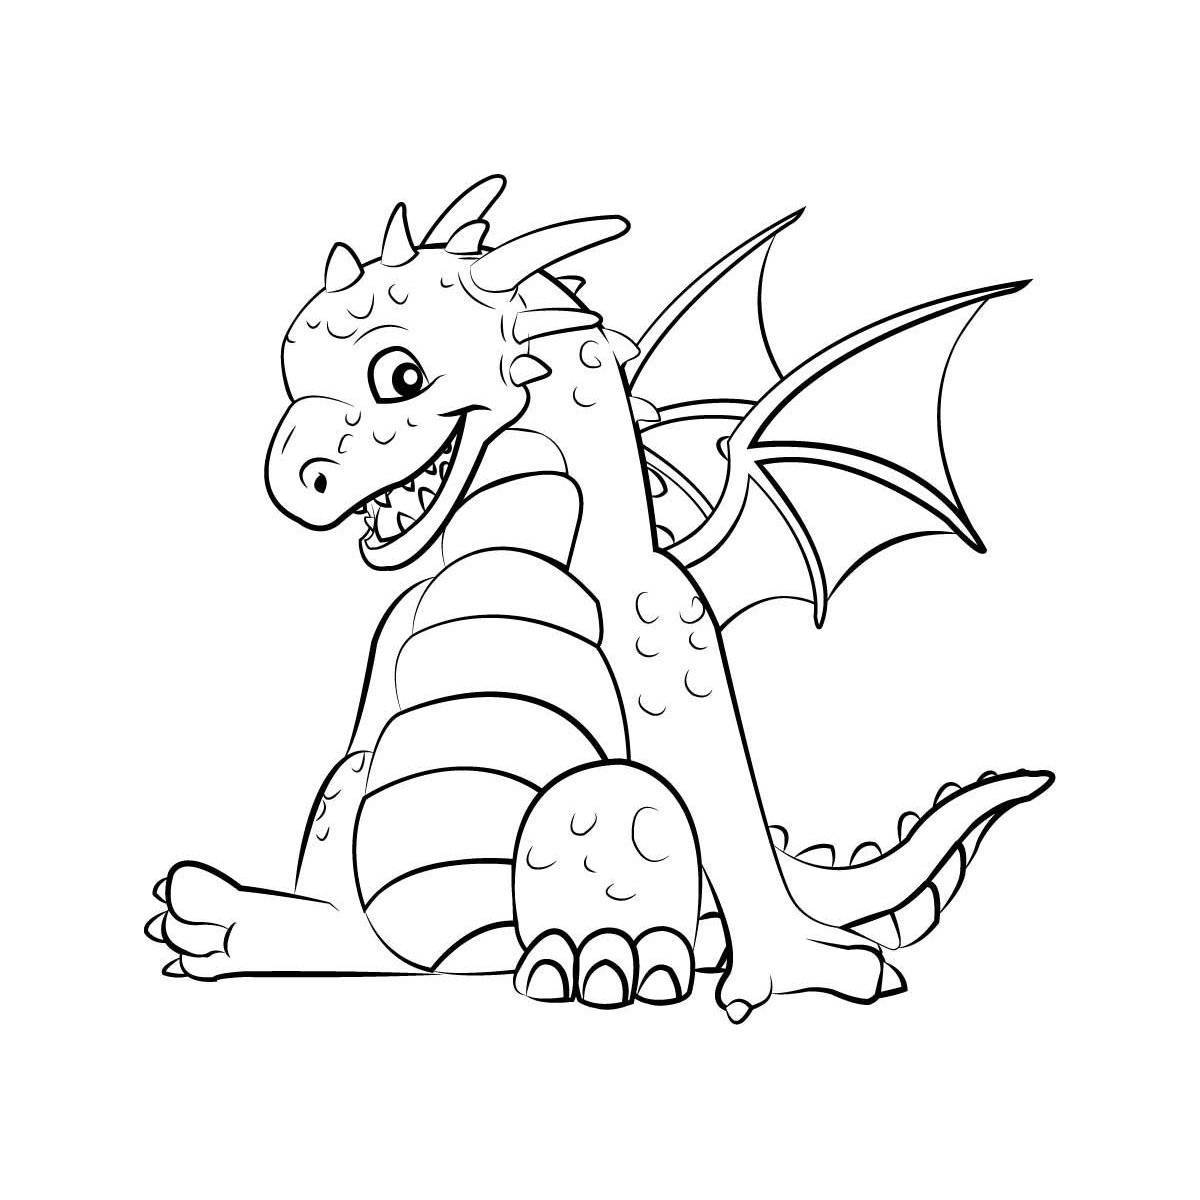 Intensive dragon coloring